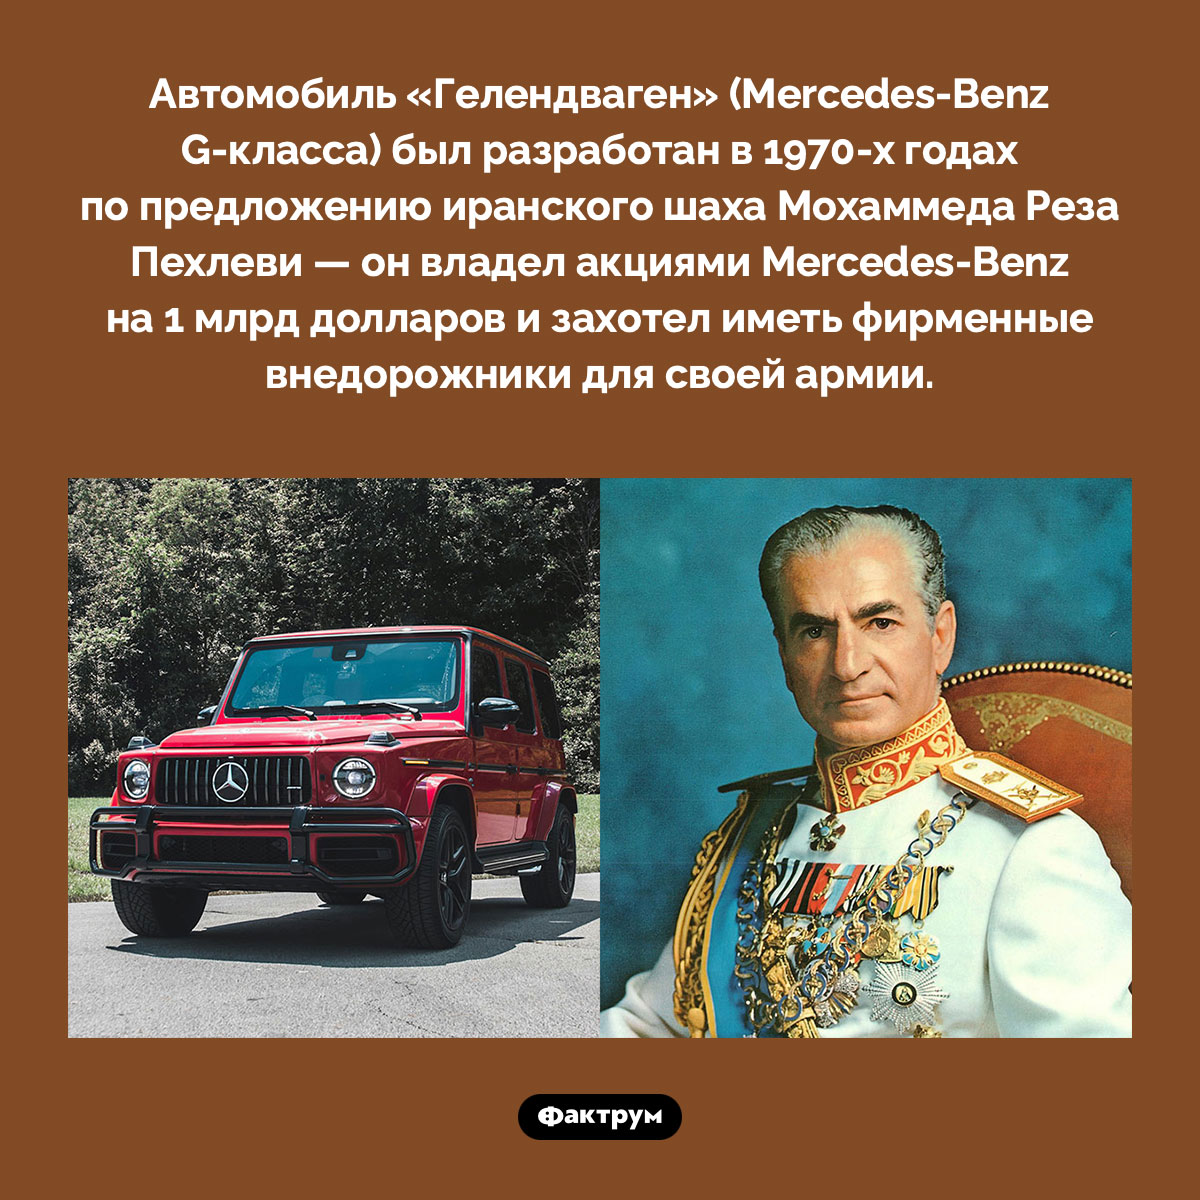 Как появился «Гелик». Автомобиль «Гелендваген» (Mercedes-Benz G-класса) был разработан в 1970-х годах по предложению иранского шаха Мохаммеда Реза Пехлеви — он владел акциями Mercedes-Benz на 1 млрд долларов и захотел иметь фирменные внедорожники для своей армии.